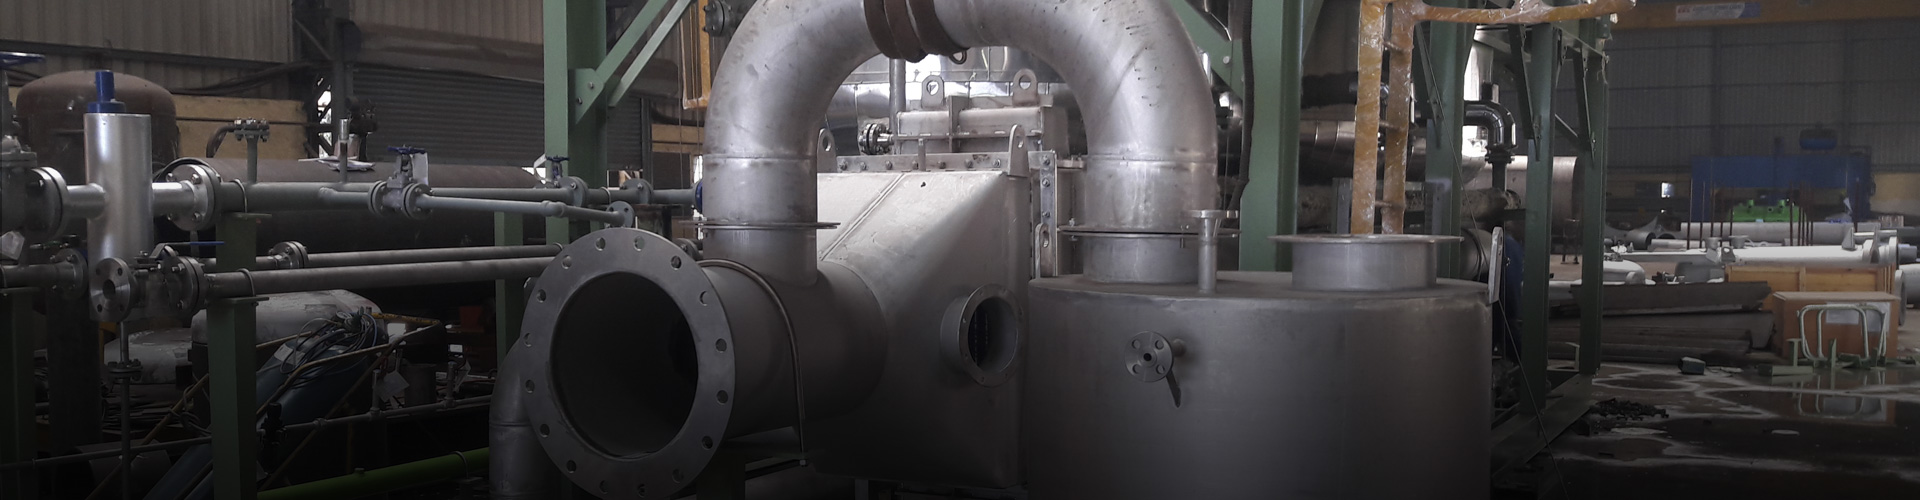 Boiler Dosing Systems Exporter